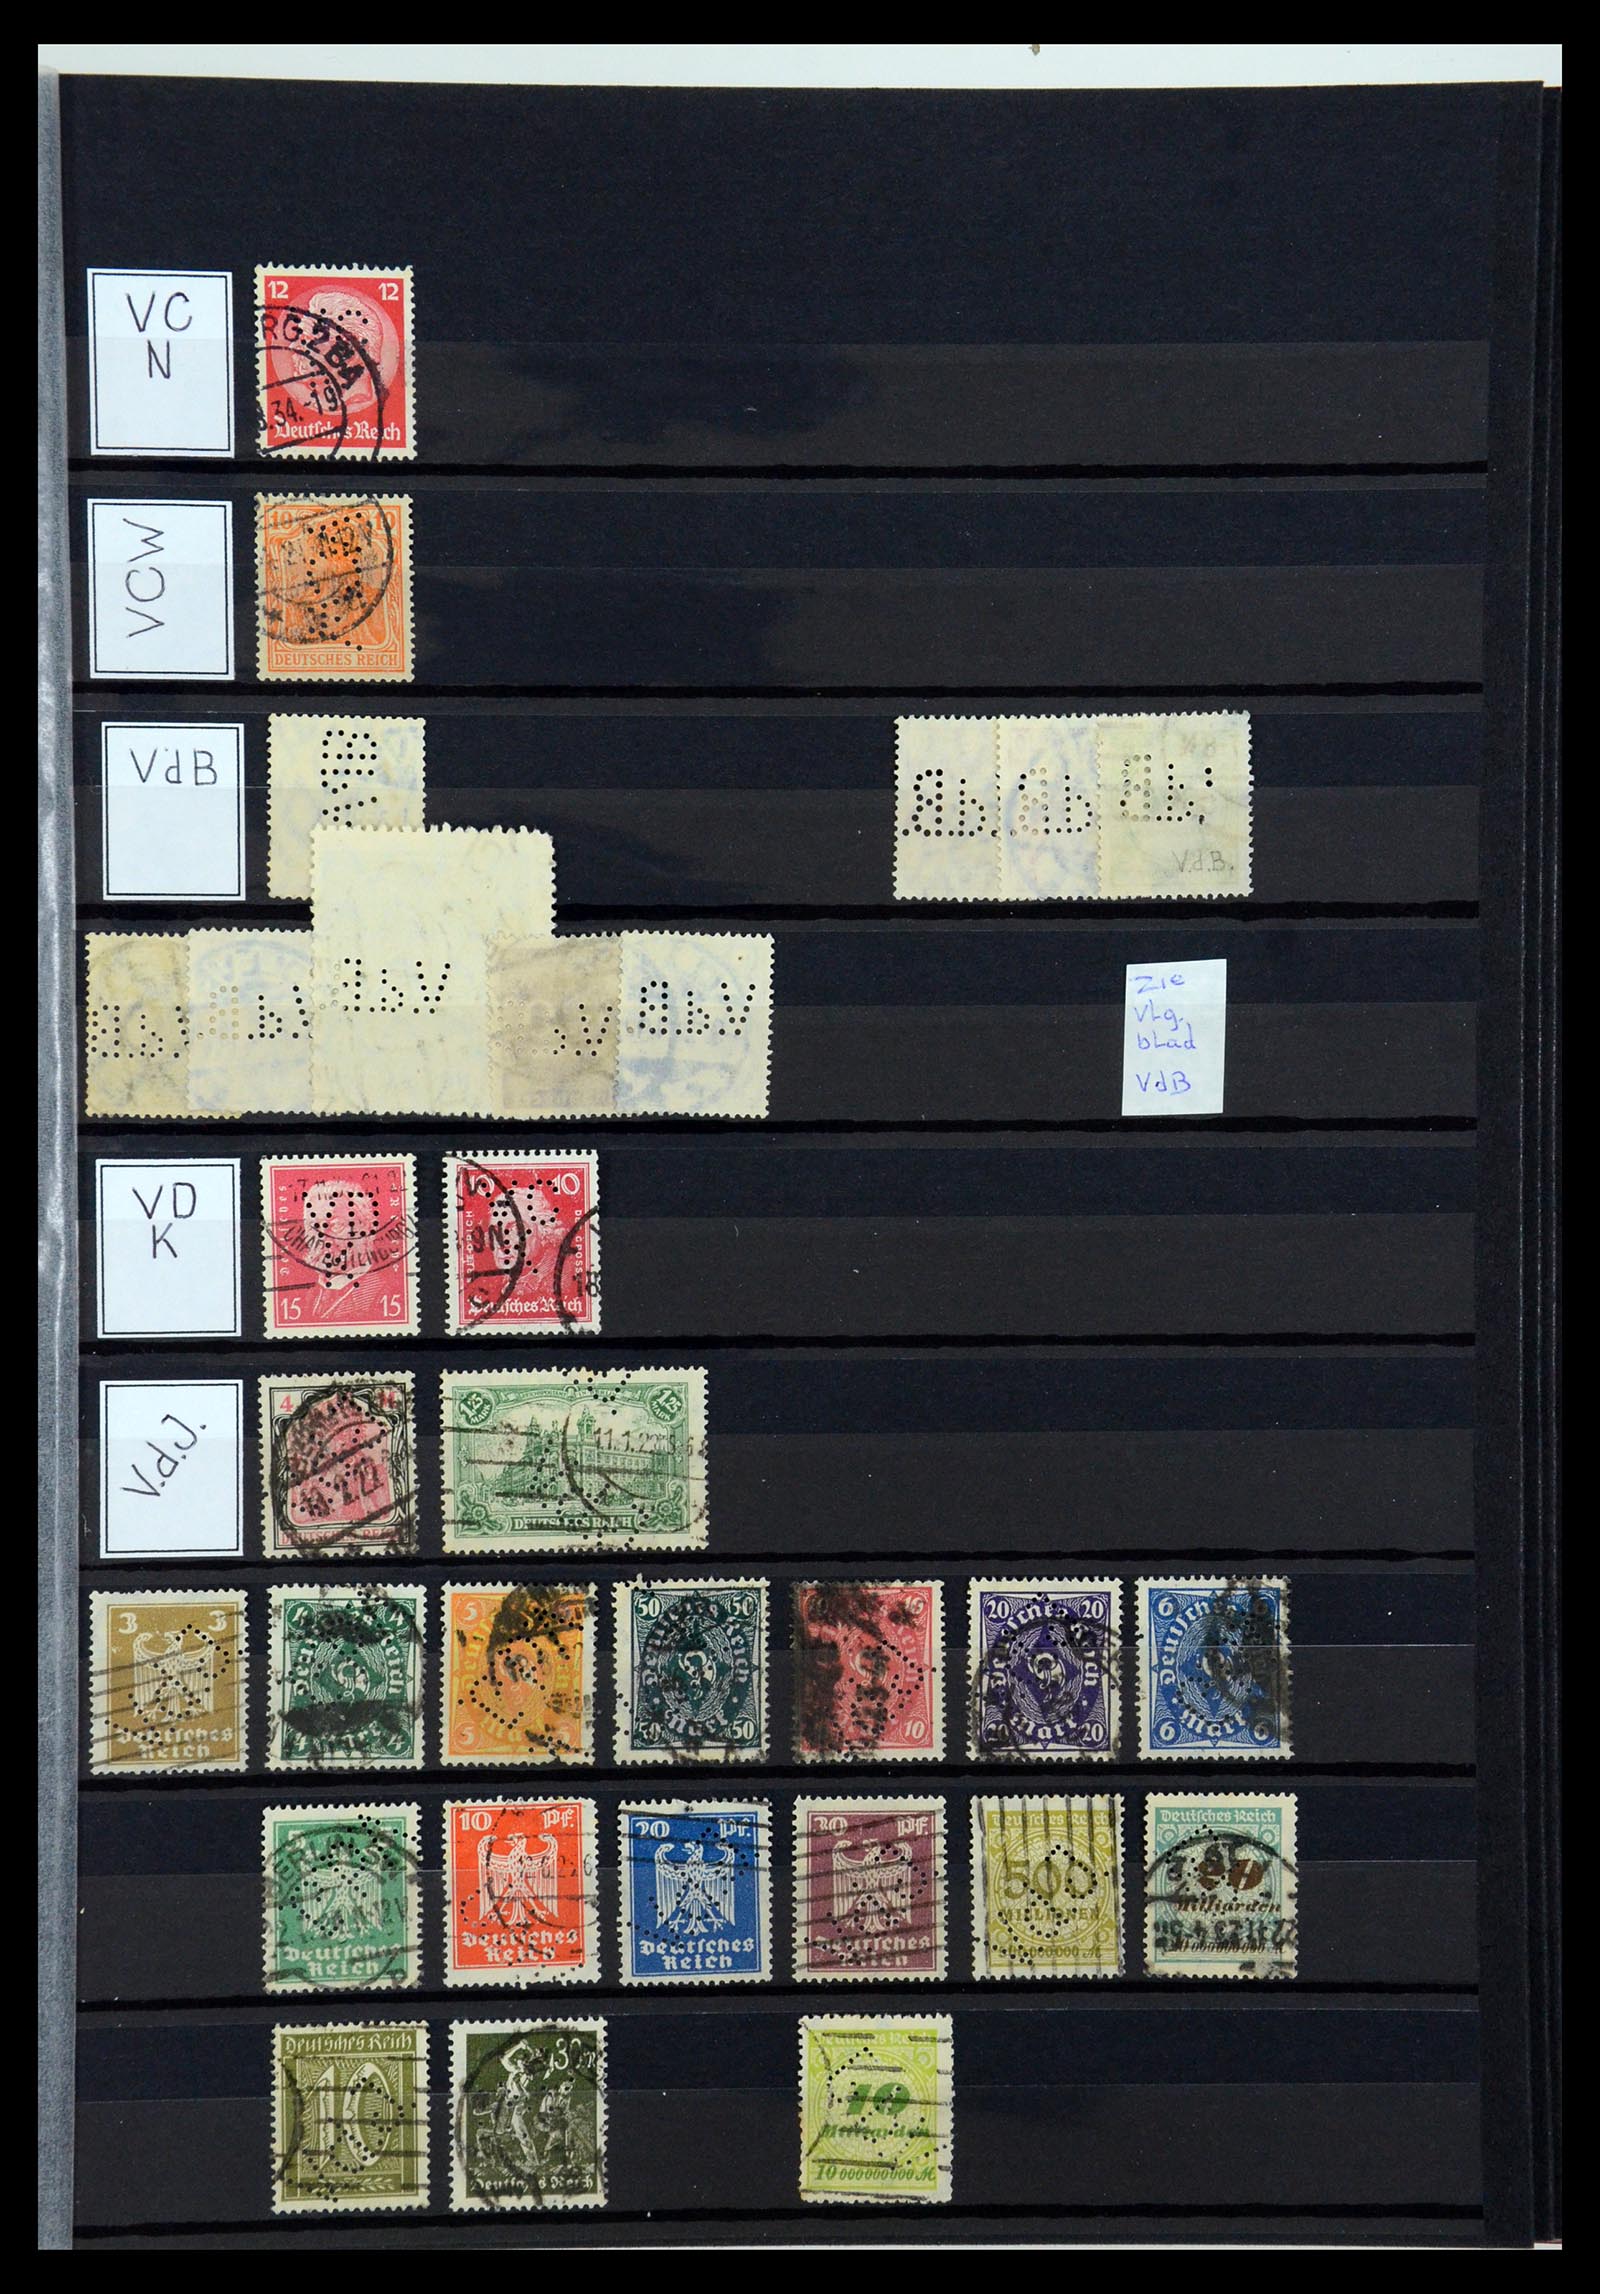 36405 326 - Stamp collection 36405 German Reich perfins 1880-1945.